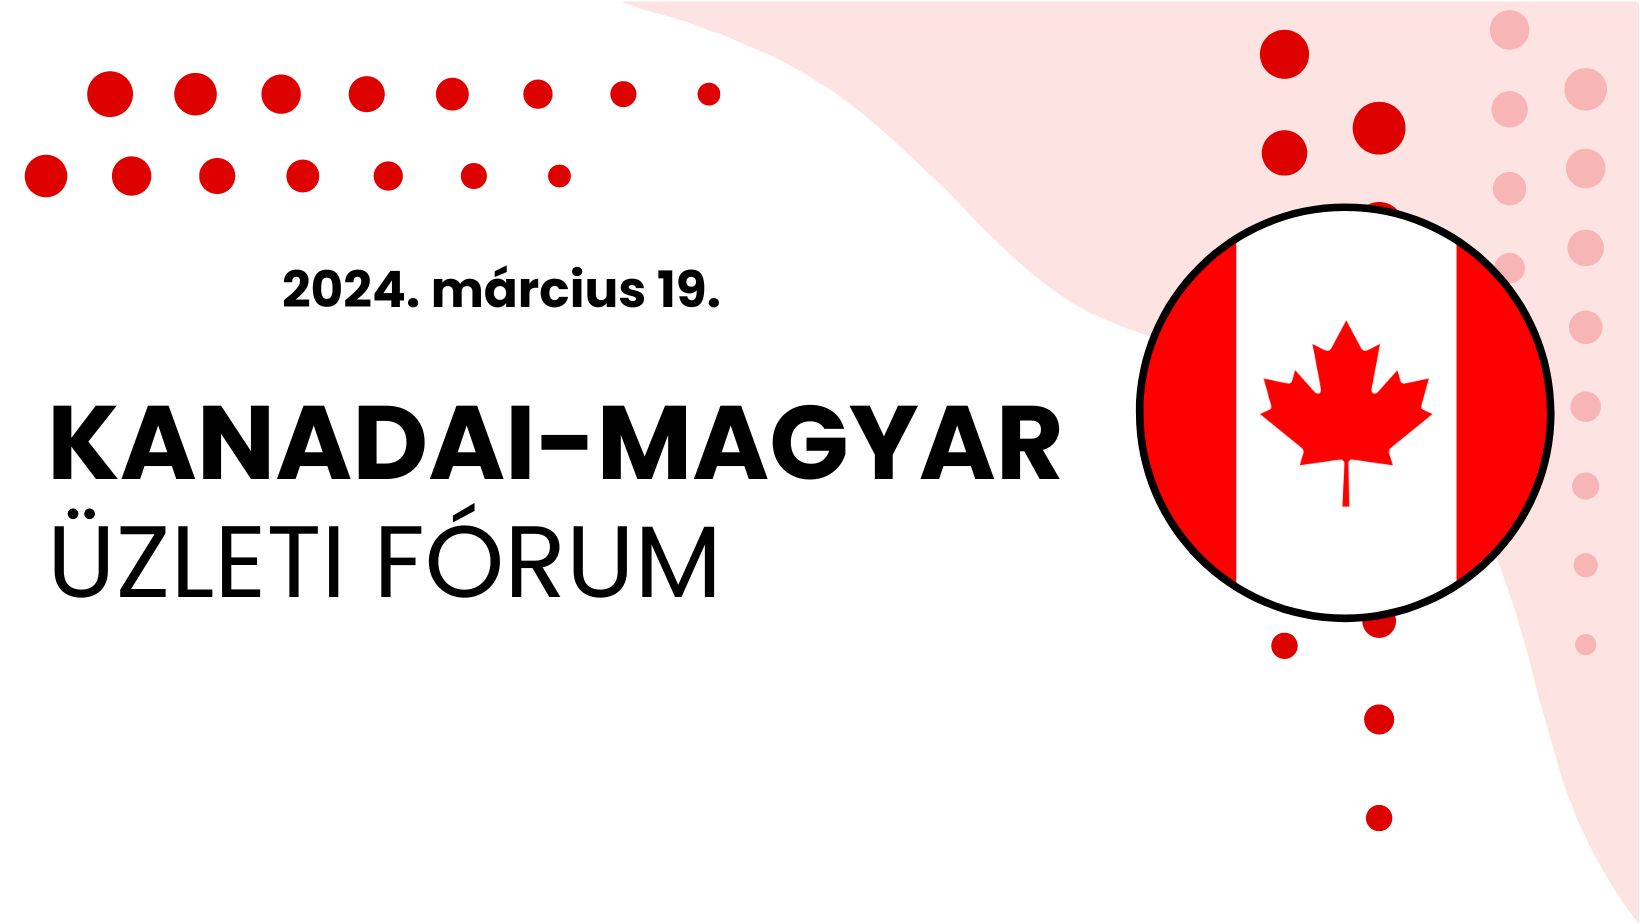 Kanadai–magyar üzleti fórum: 2024. március 19., Kecskemét